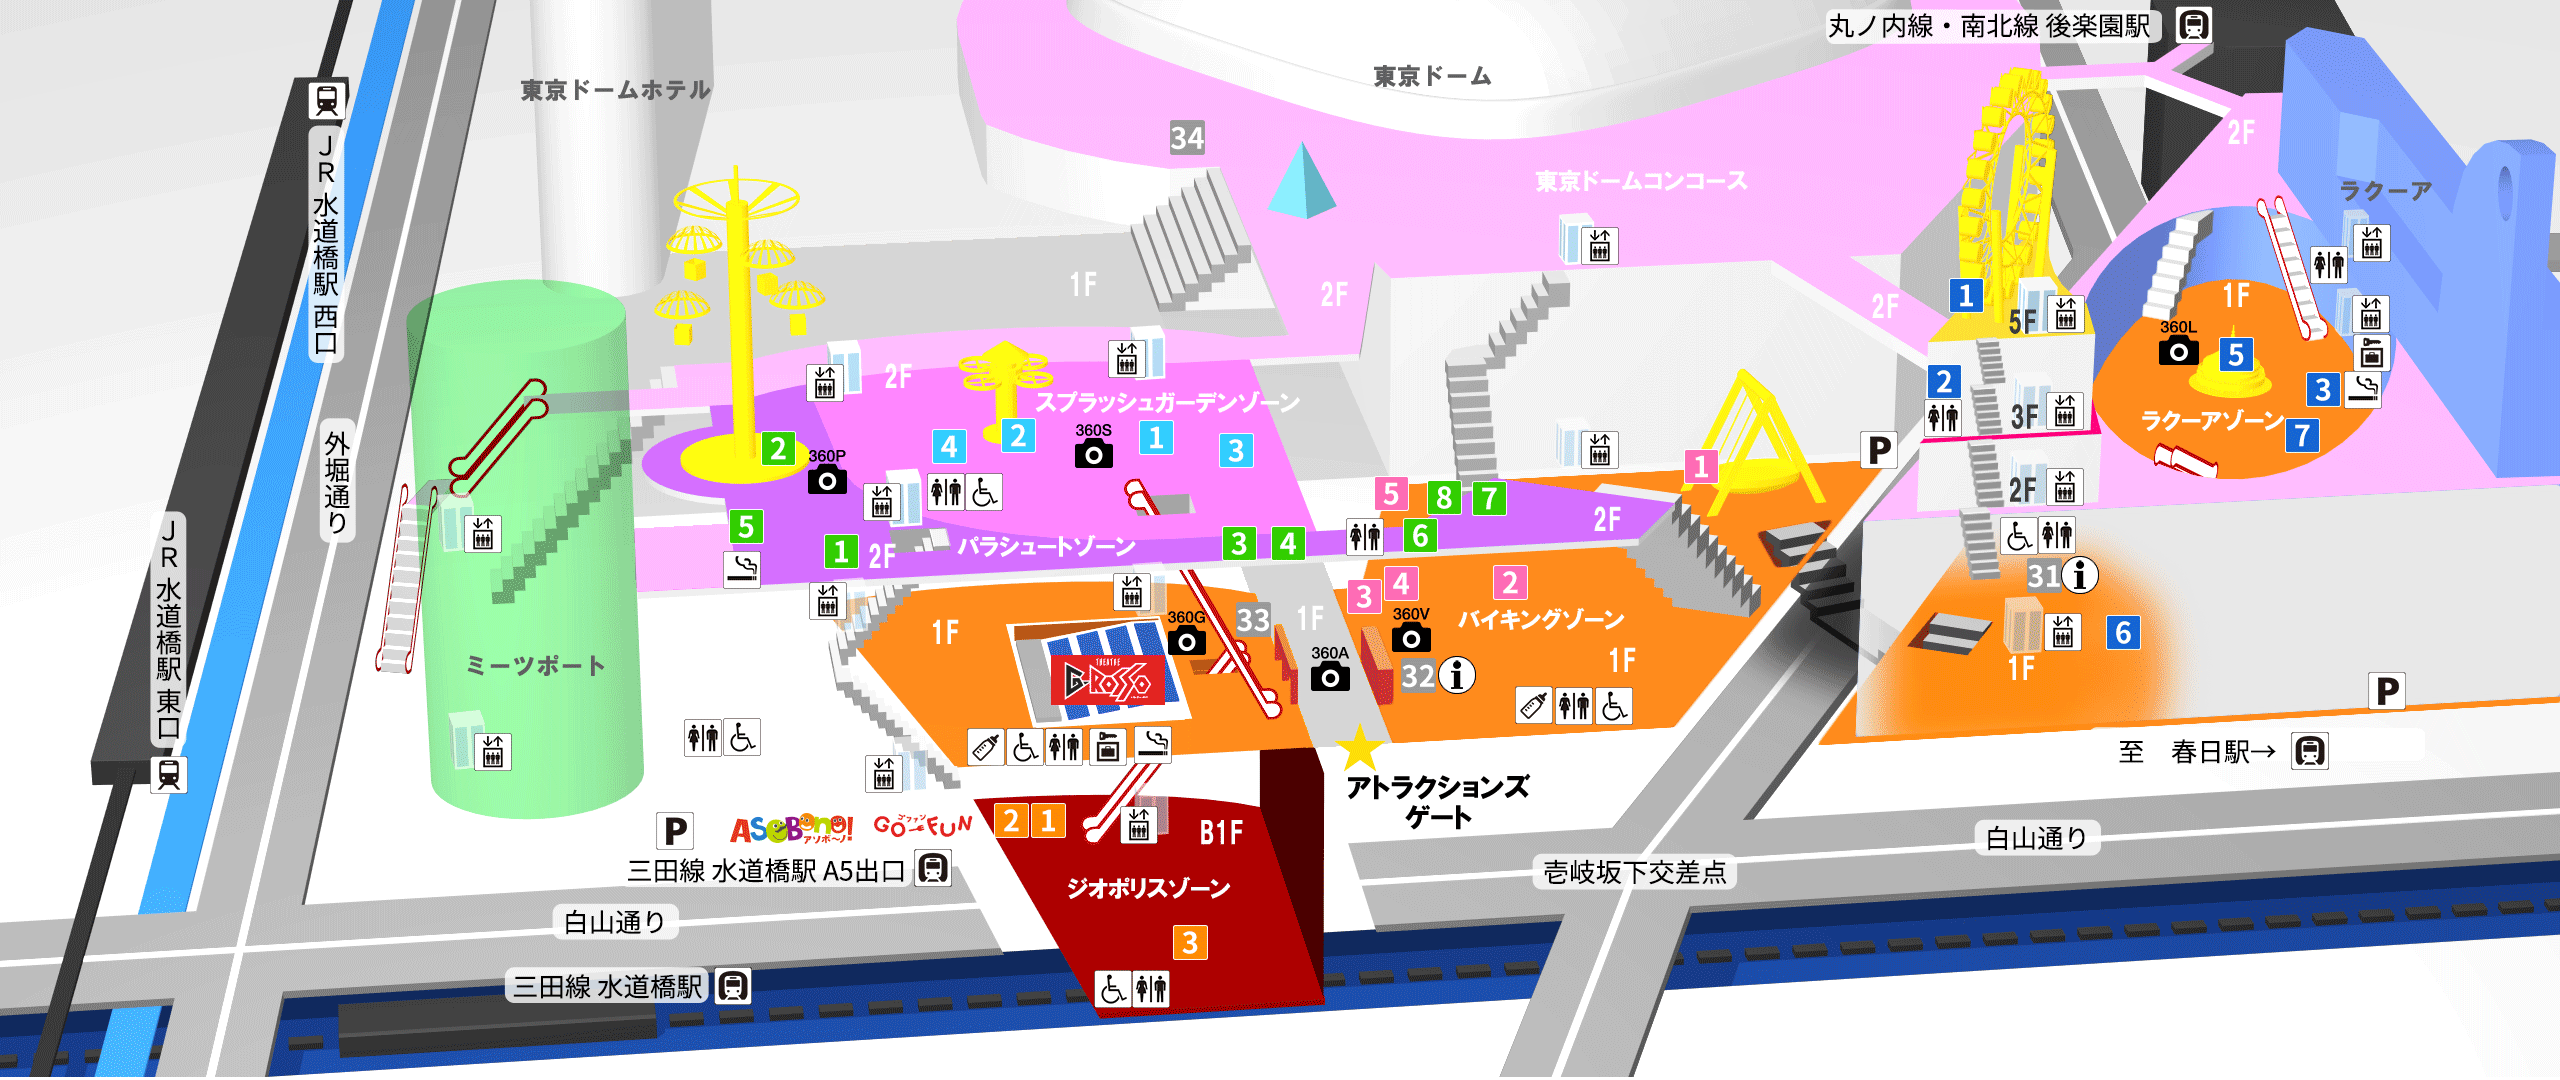 アクセス・園内マップ(4/1〜) TDCA 東京ドームシティアトラクションズ